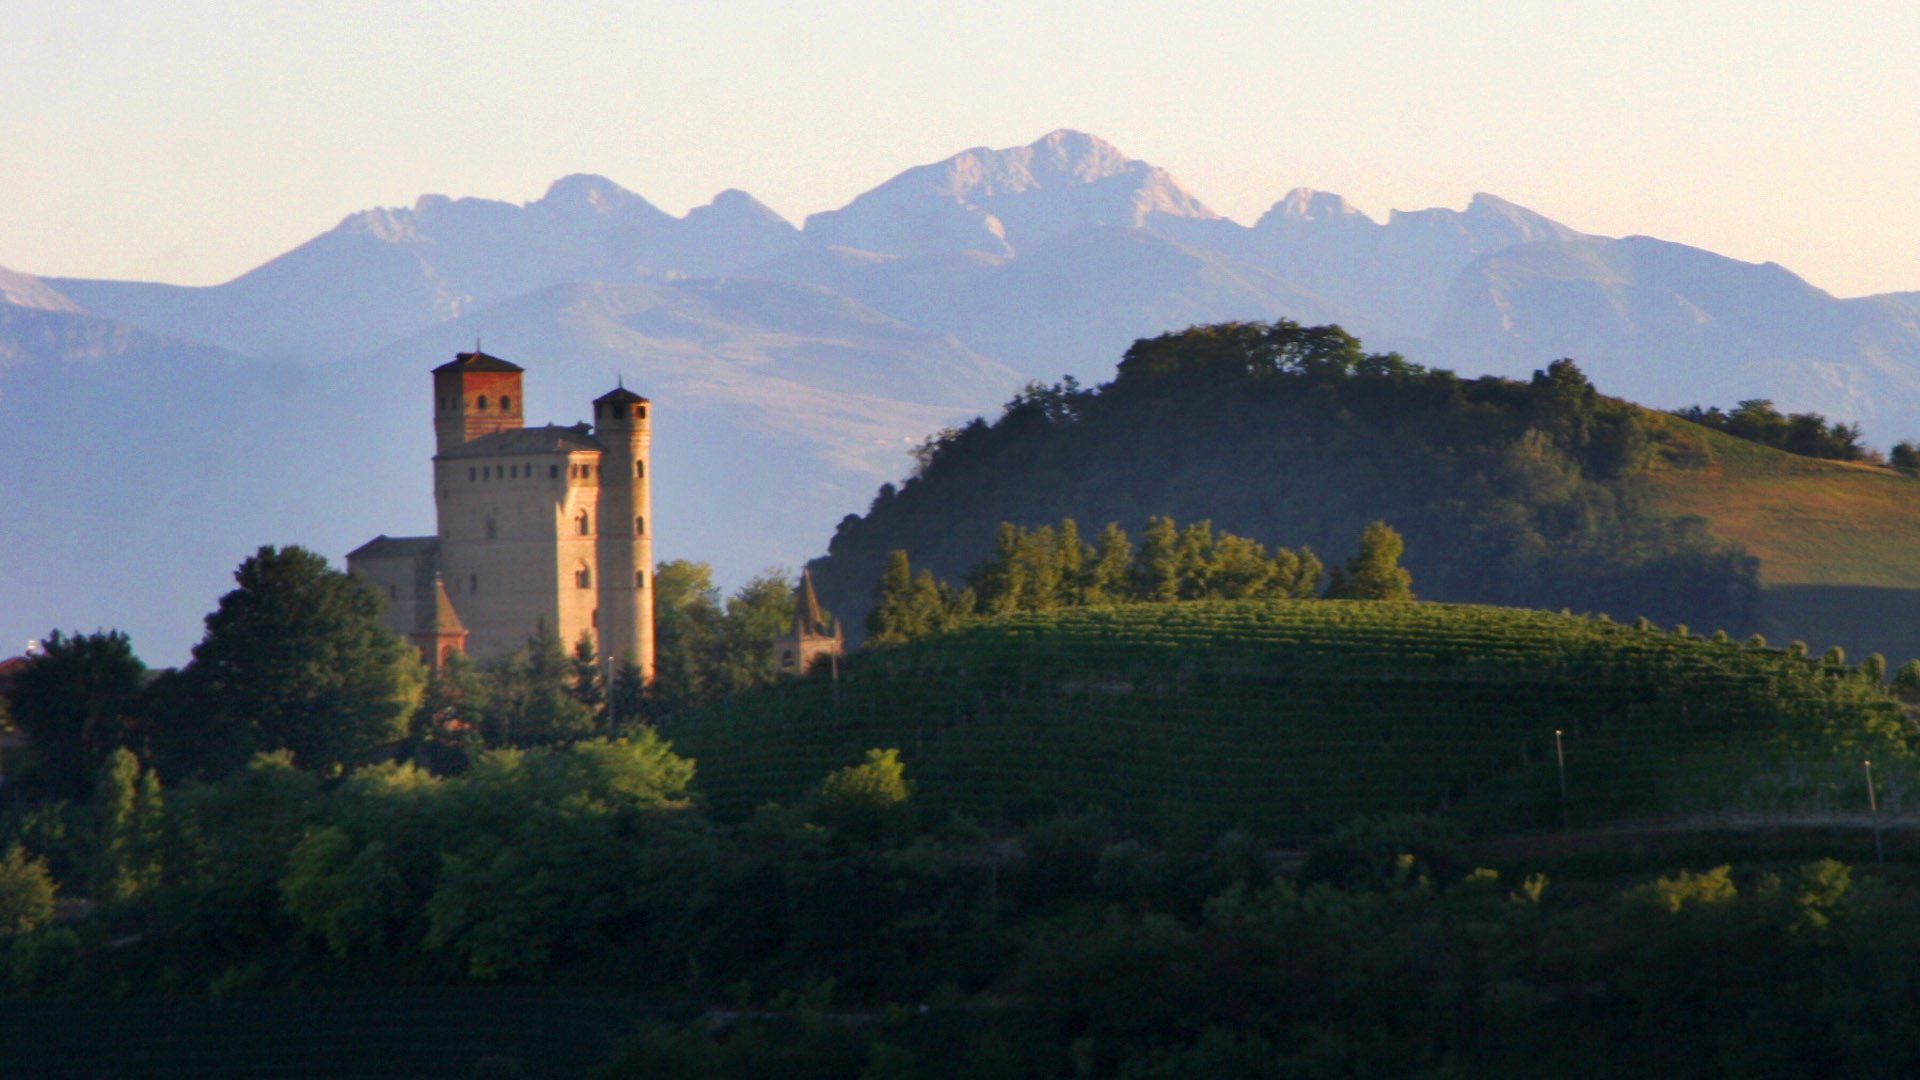 The Castle of Serralunga d'Alba